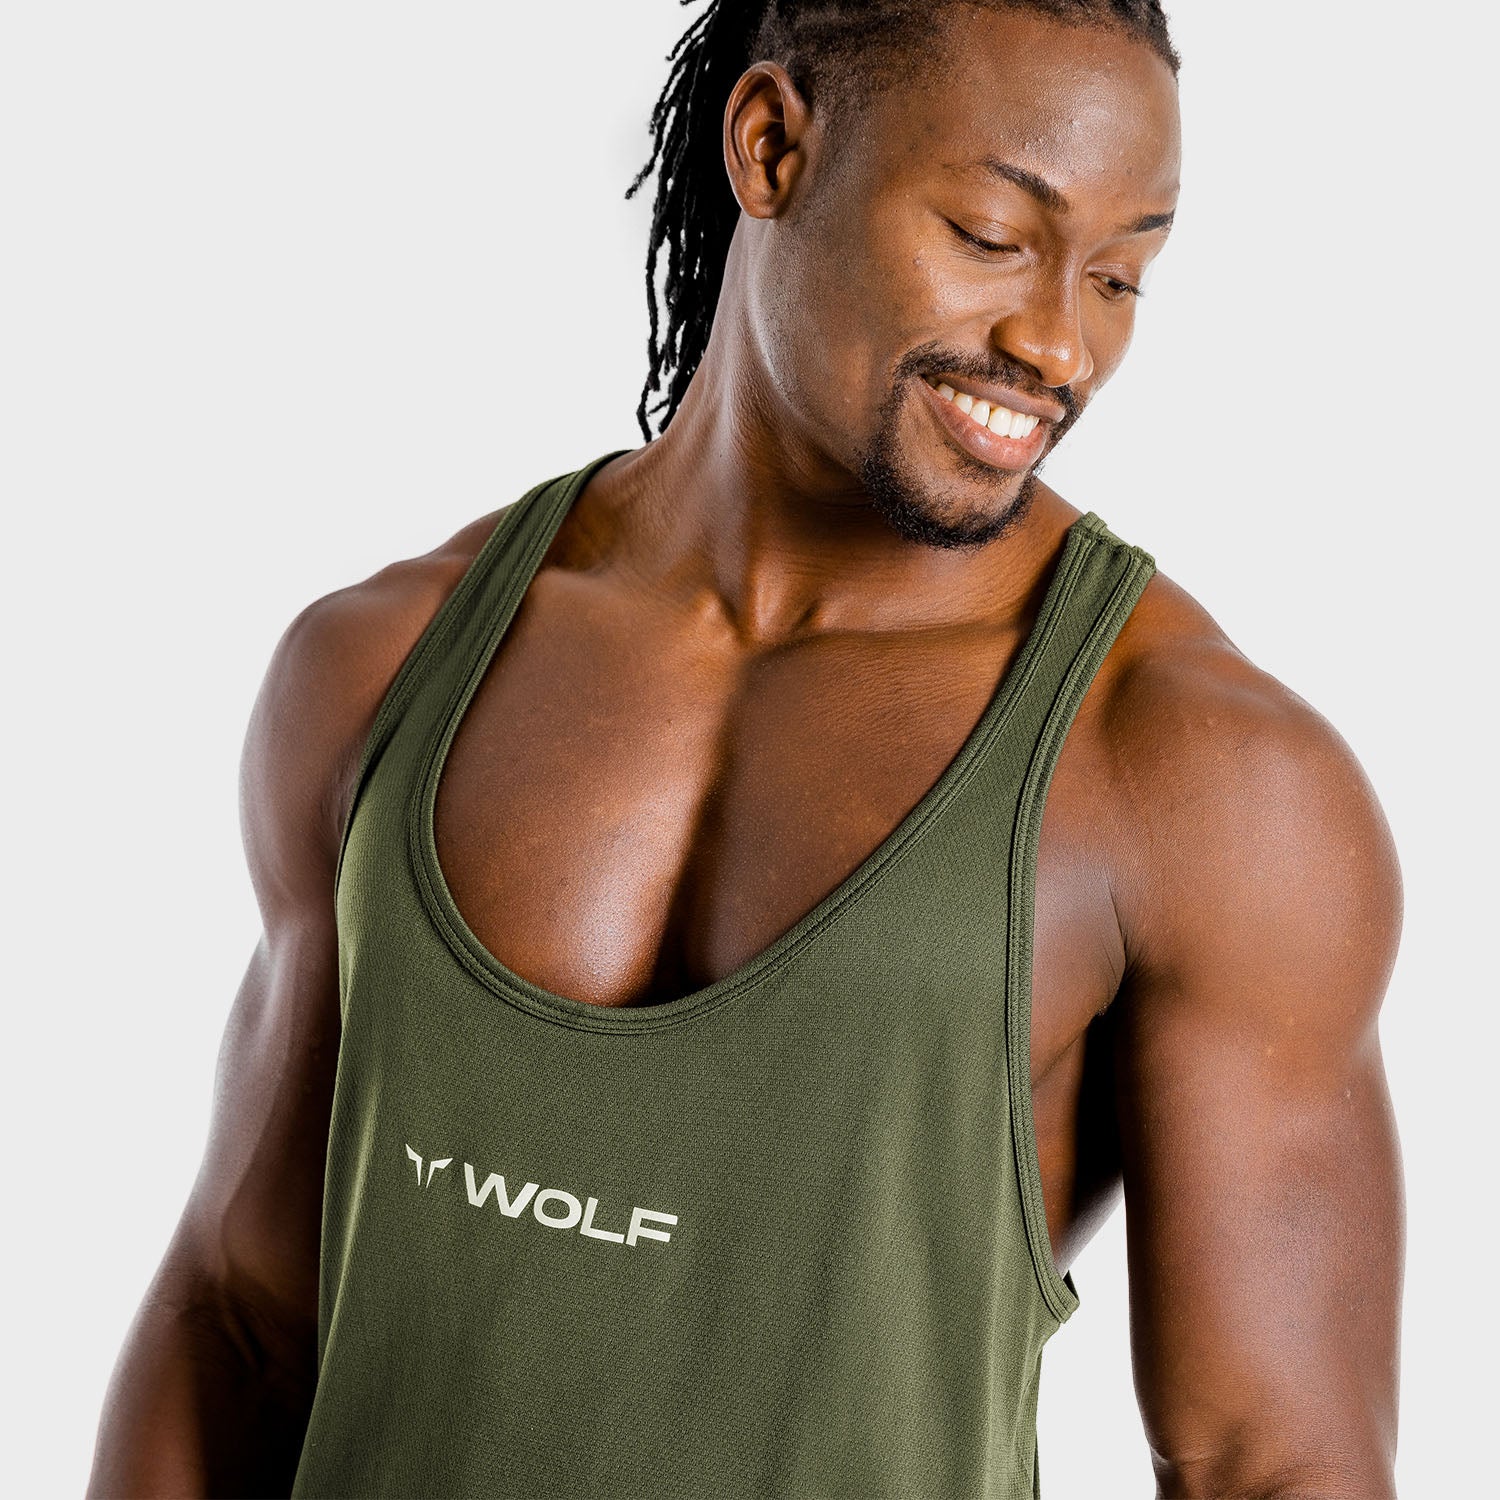 squatwolf-gym-wear-primal-stringer-khaki-stringer-vests-for-men